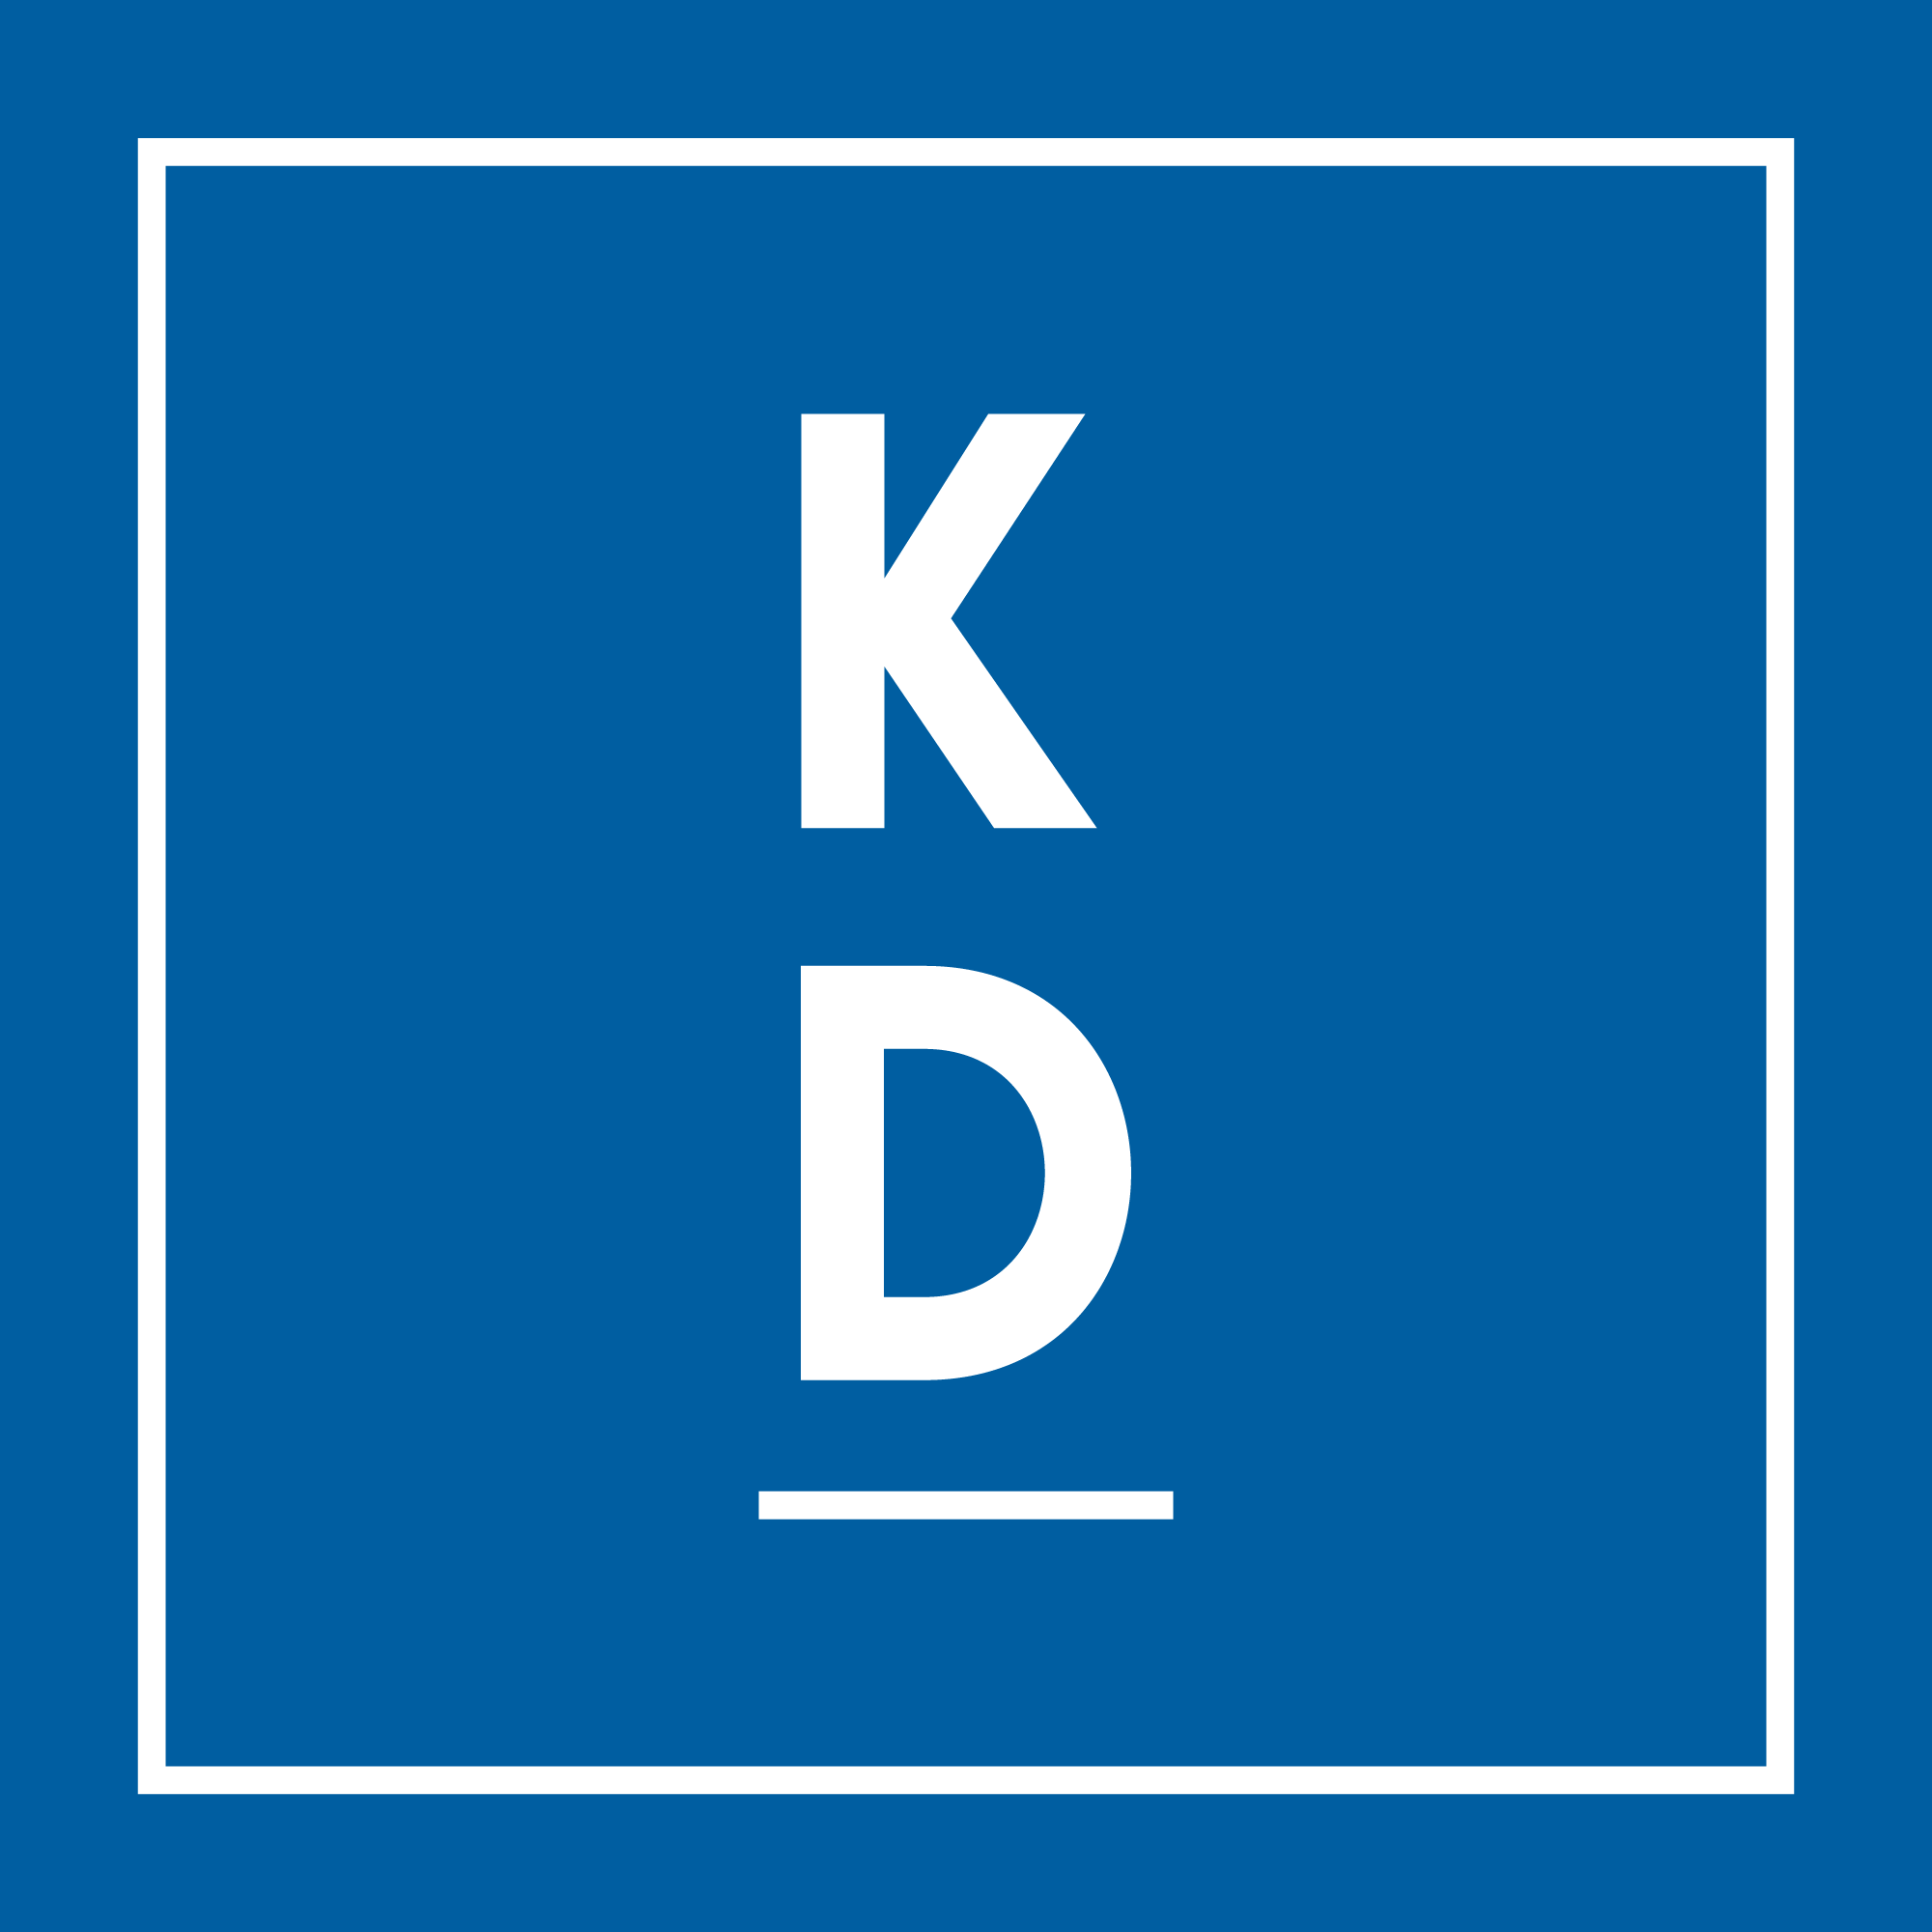 KD logo blue 002